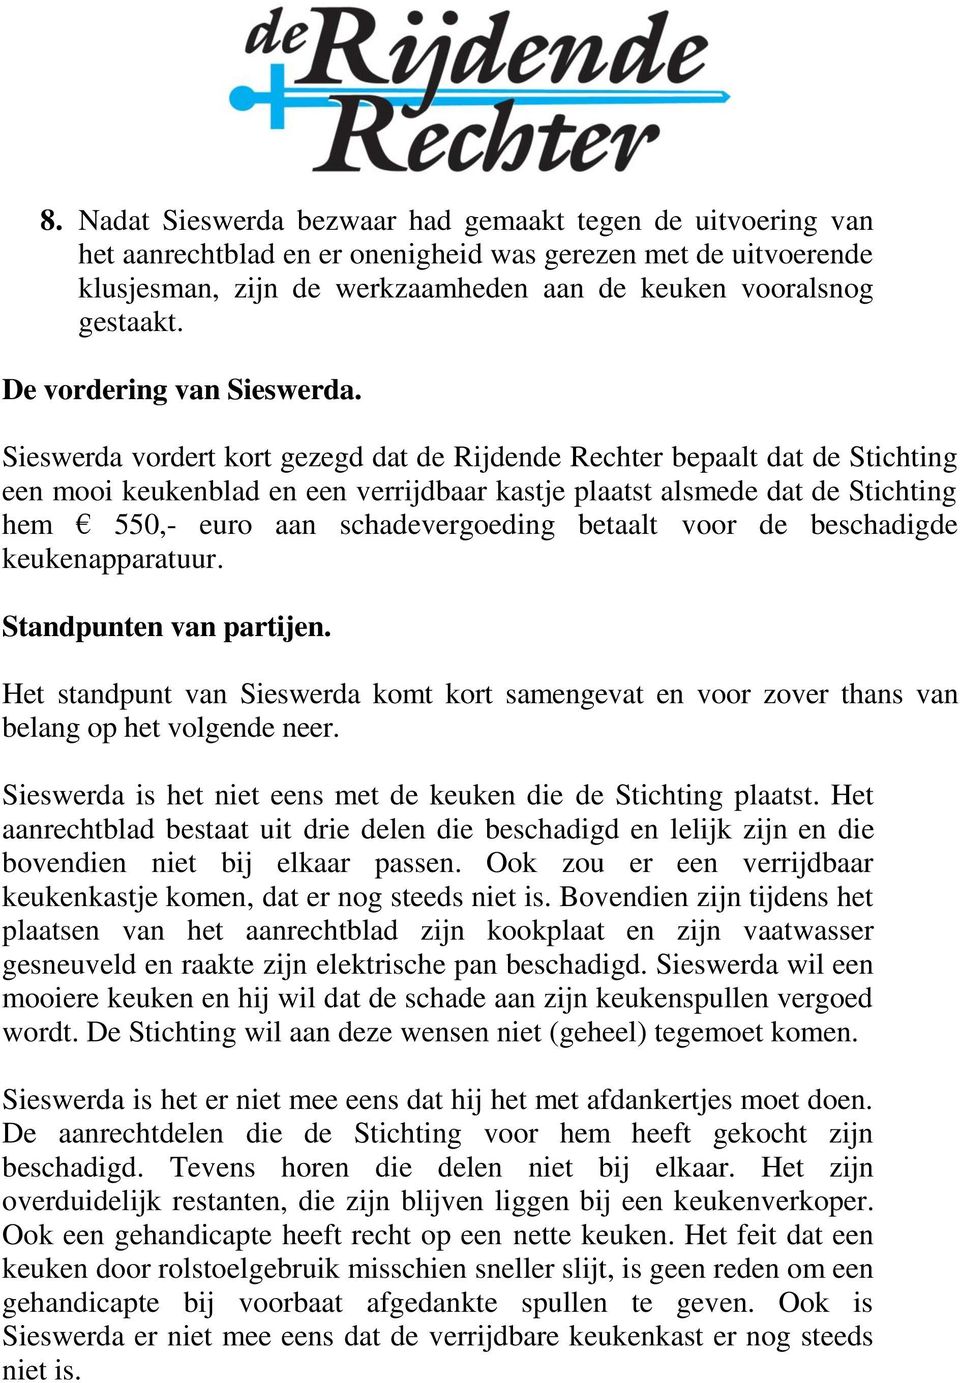 Sieswerda vordert kort gezegd dat de Rijdende Rechter bepaalt dat de Stichting een mooi keukenblad en een verrijdbaar kastje plaatst alsmede dat de Stichting hem 550,- euro aan schadevergoeding